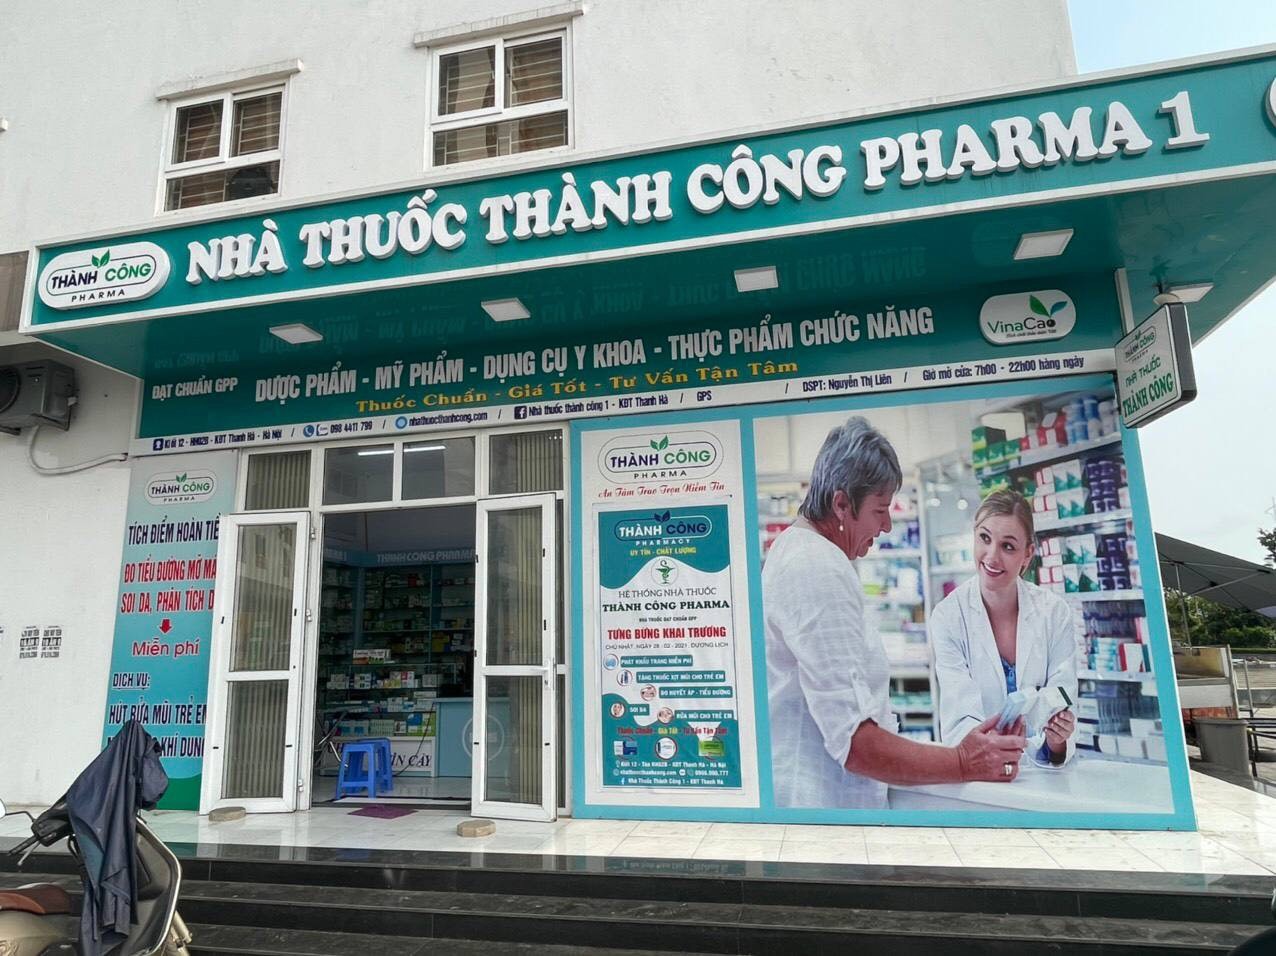 Thành công Pharma chia sẻ bài học “vỡ lòng” để trở thành nhà phân phối dược phẩm uy tín - ảnh 5